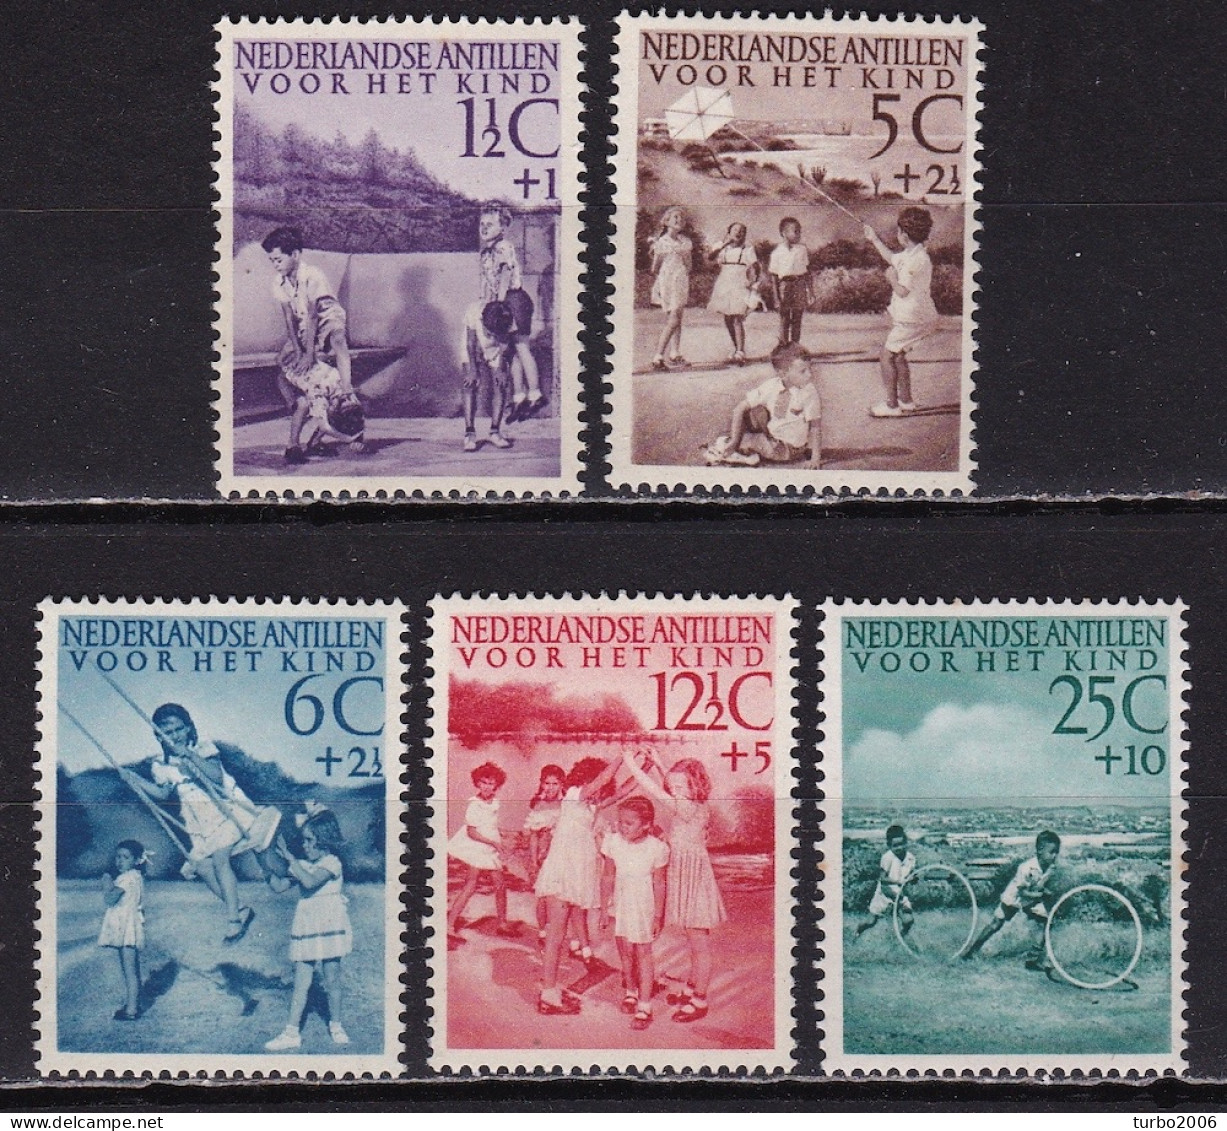 Ned. Antillen 1951 Kinderzegels Kinderspelen Complete Postfrisse Serie NVPH 234 / 238 - Curazao, Antillas Holandesas, Aruba